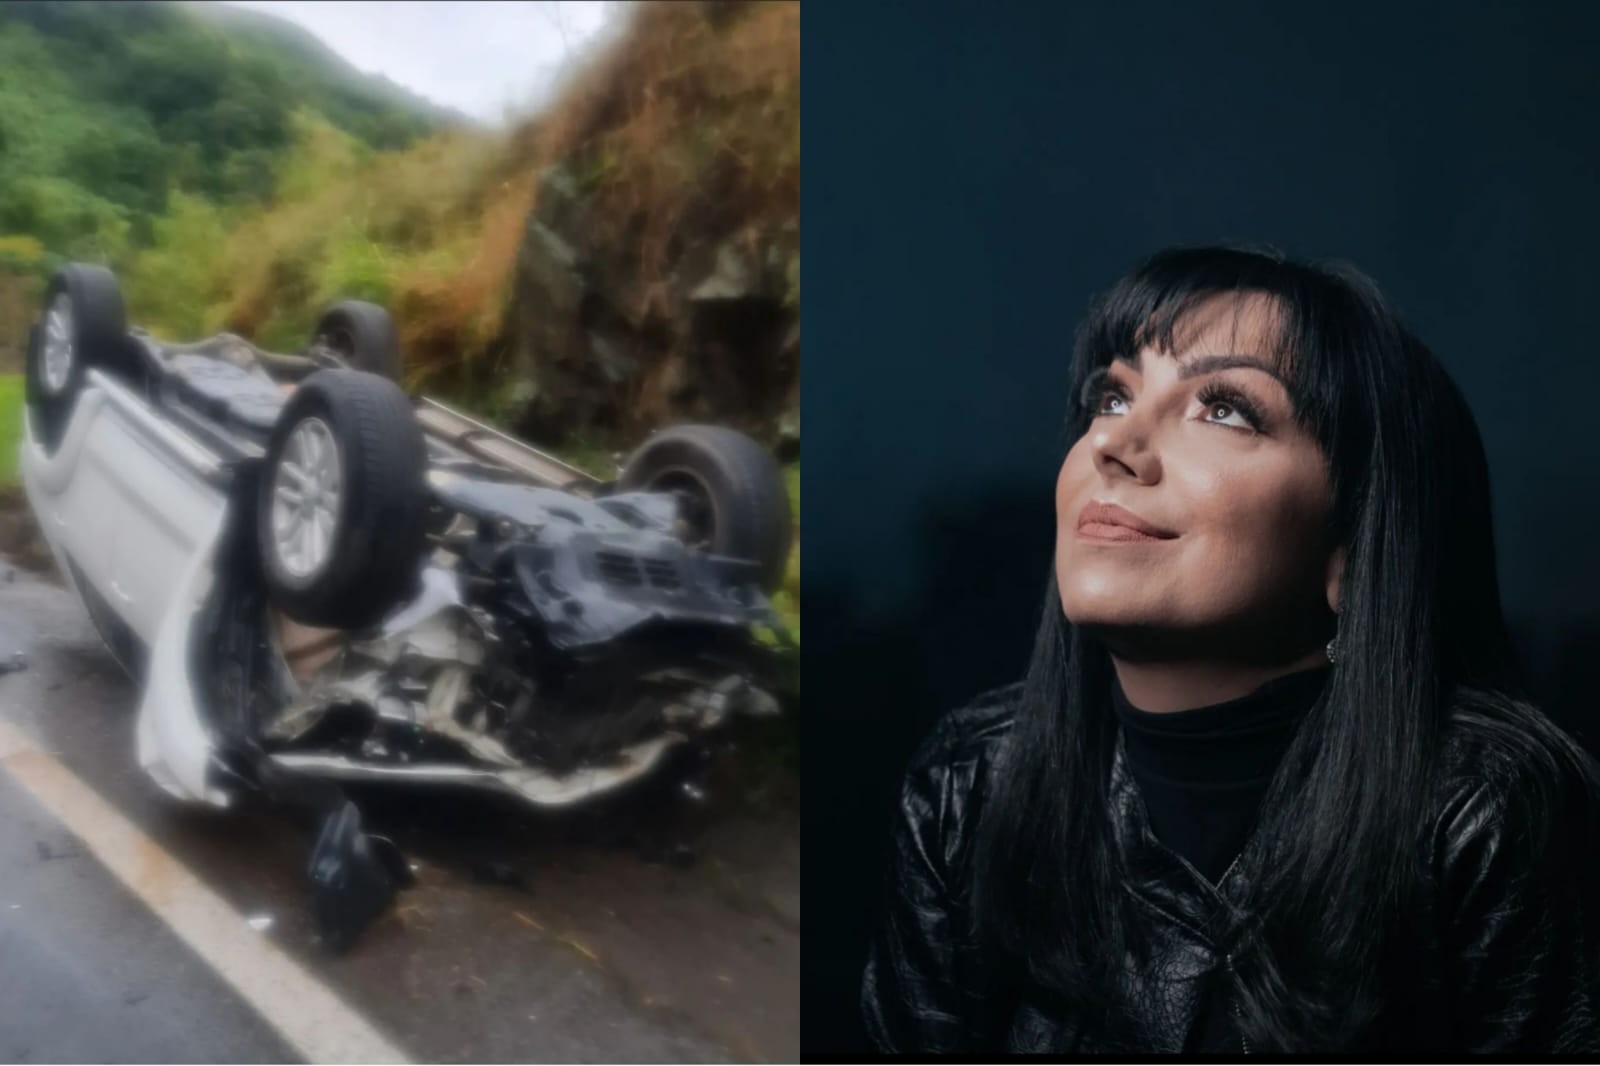 Eyshila diz que marido perdeu o controle do carro antes de acidente: 'provavelmente por causa de óleo na pista'